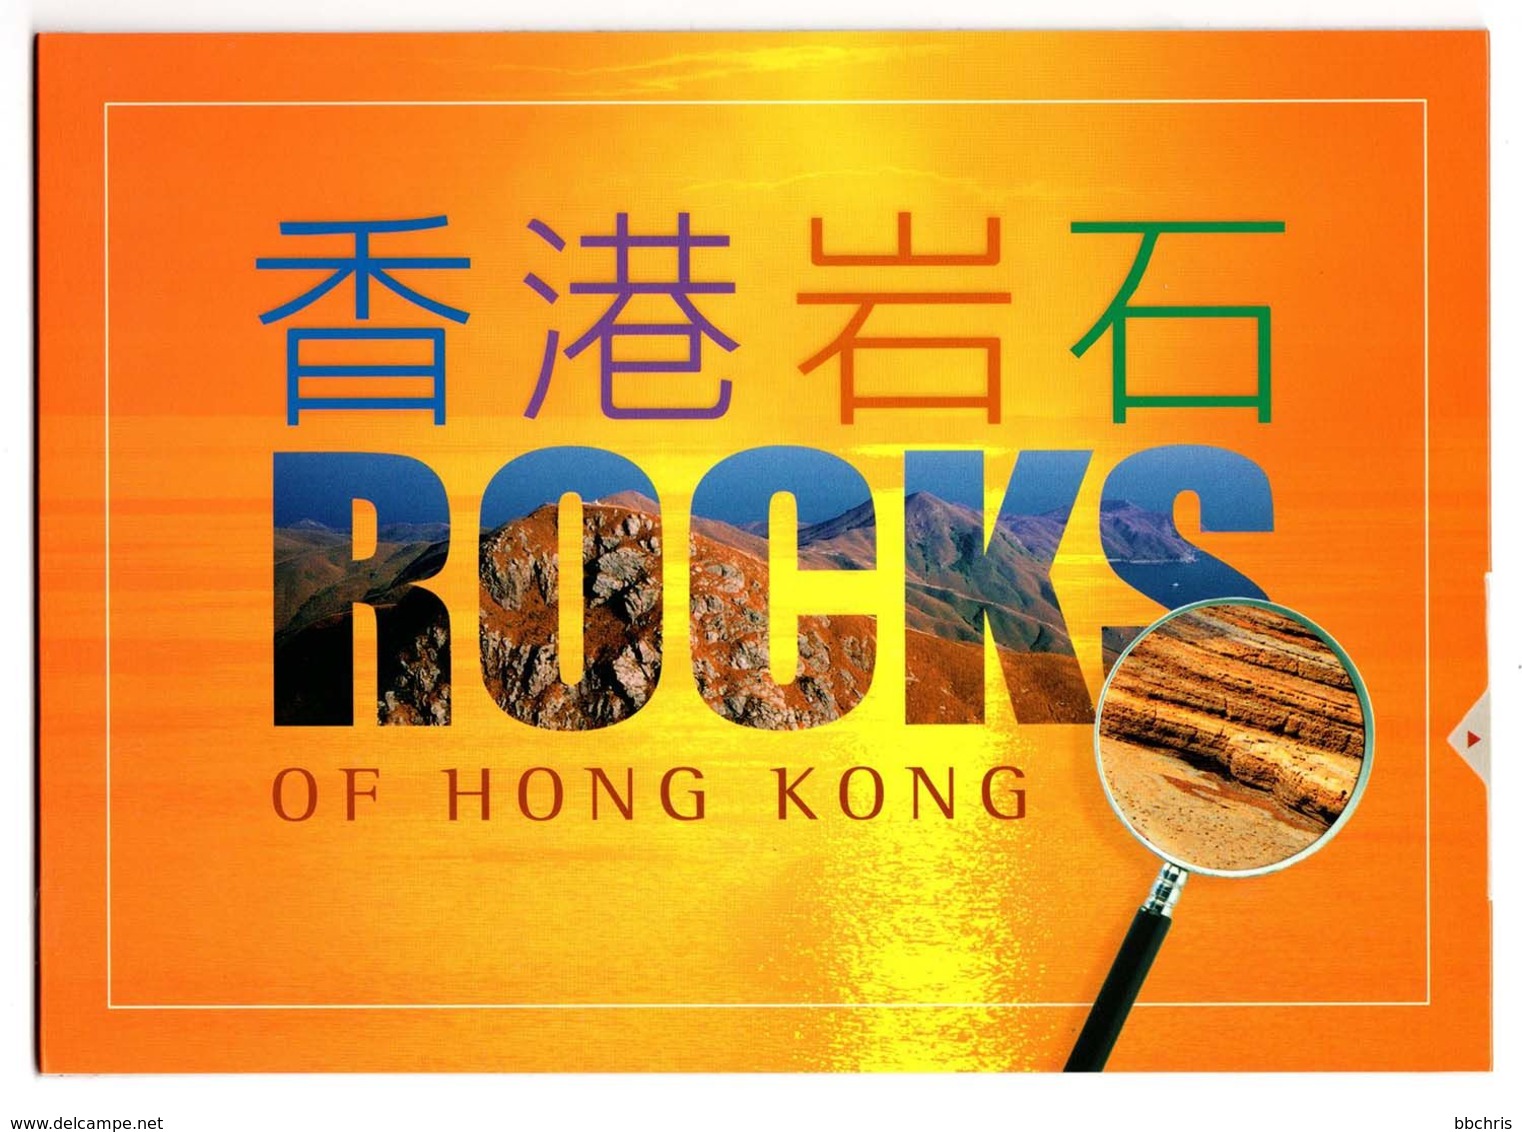 Hong Kong 2002 Rocks Of Hong Kong Presentation Pack MNH Lamma Island Ping Chau - Booklets